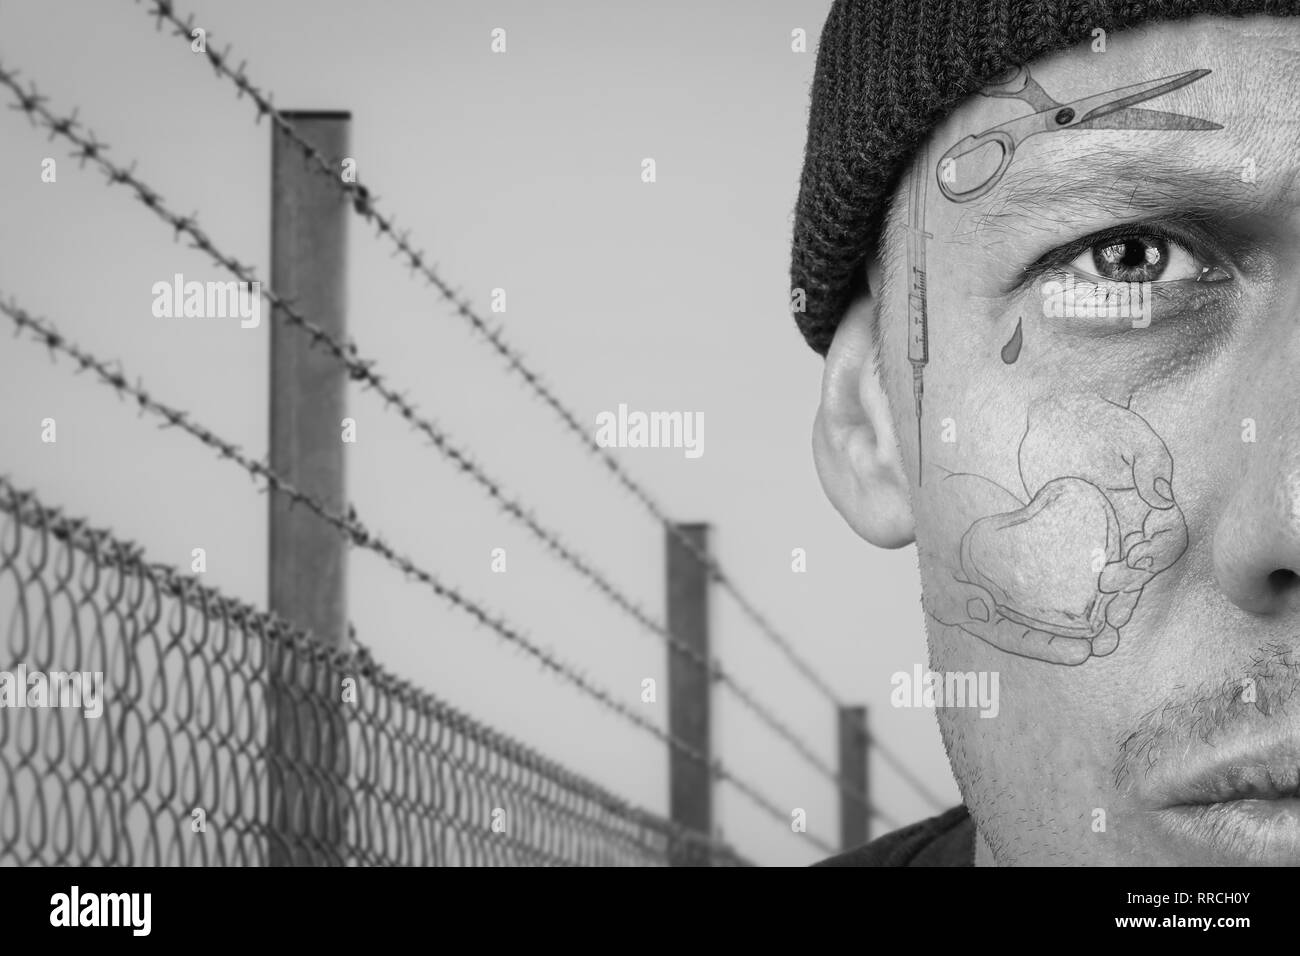 Portrait de guy avec teardrop et face tattoo. La prison pénale, de condamner et de tatouages concept. Montage de l'image. Banque D'Images